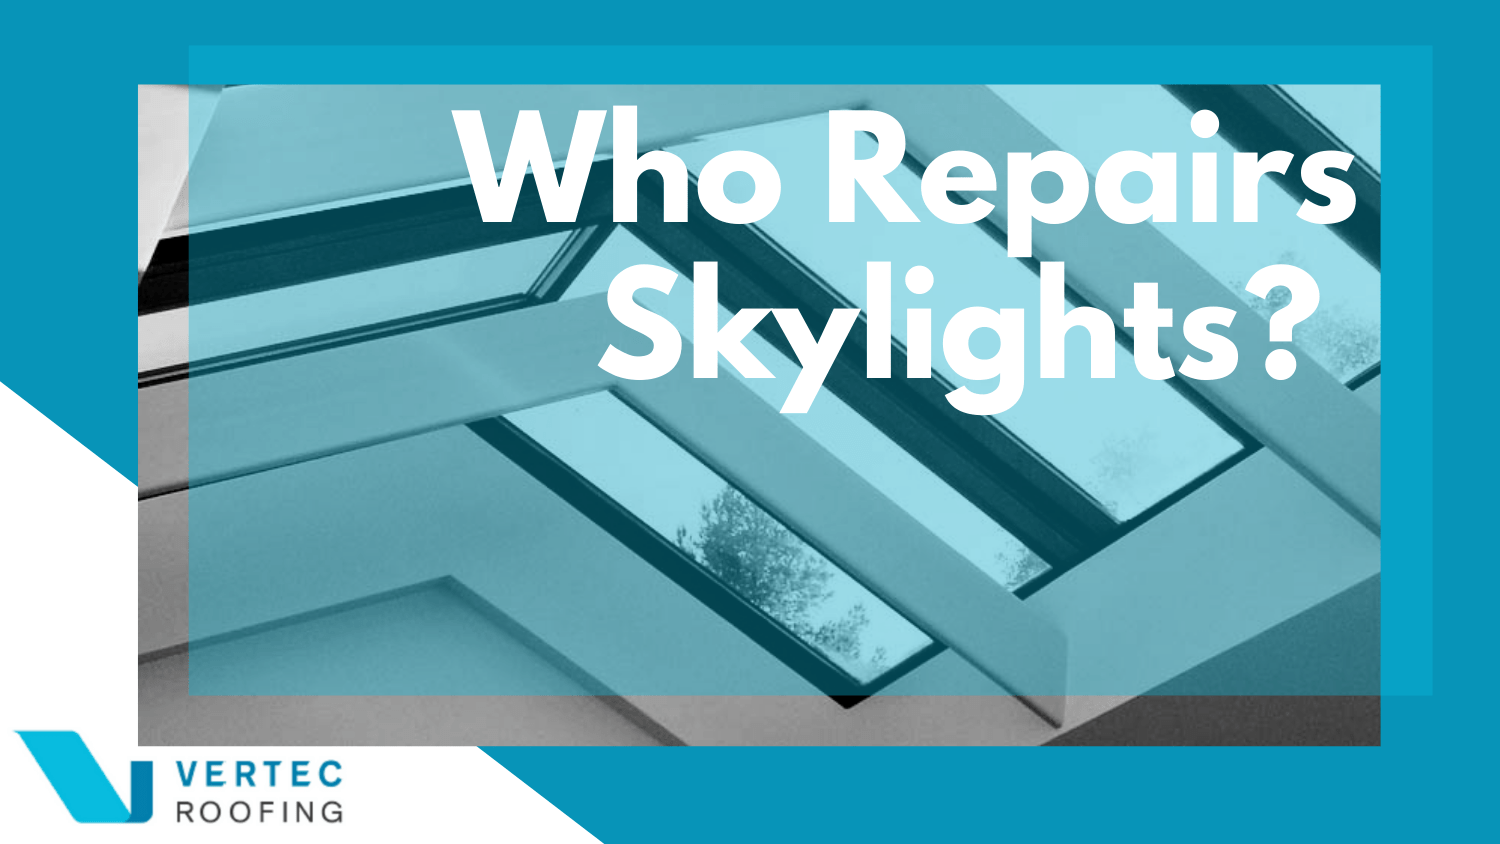 Who Repairs Skylights?